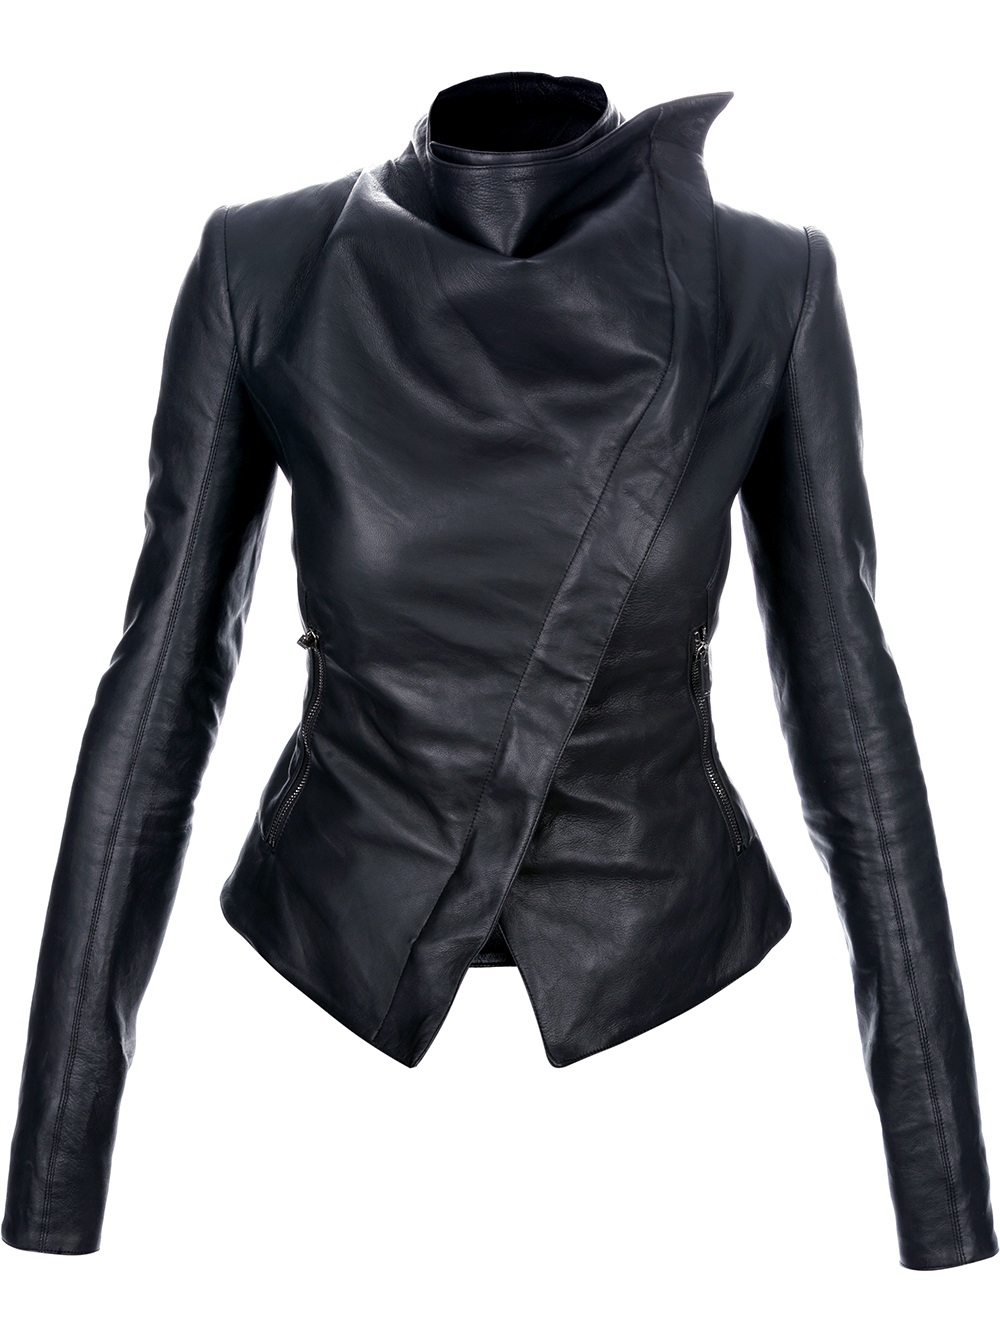 Black Asymmetrical Jacket - JacketIn